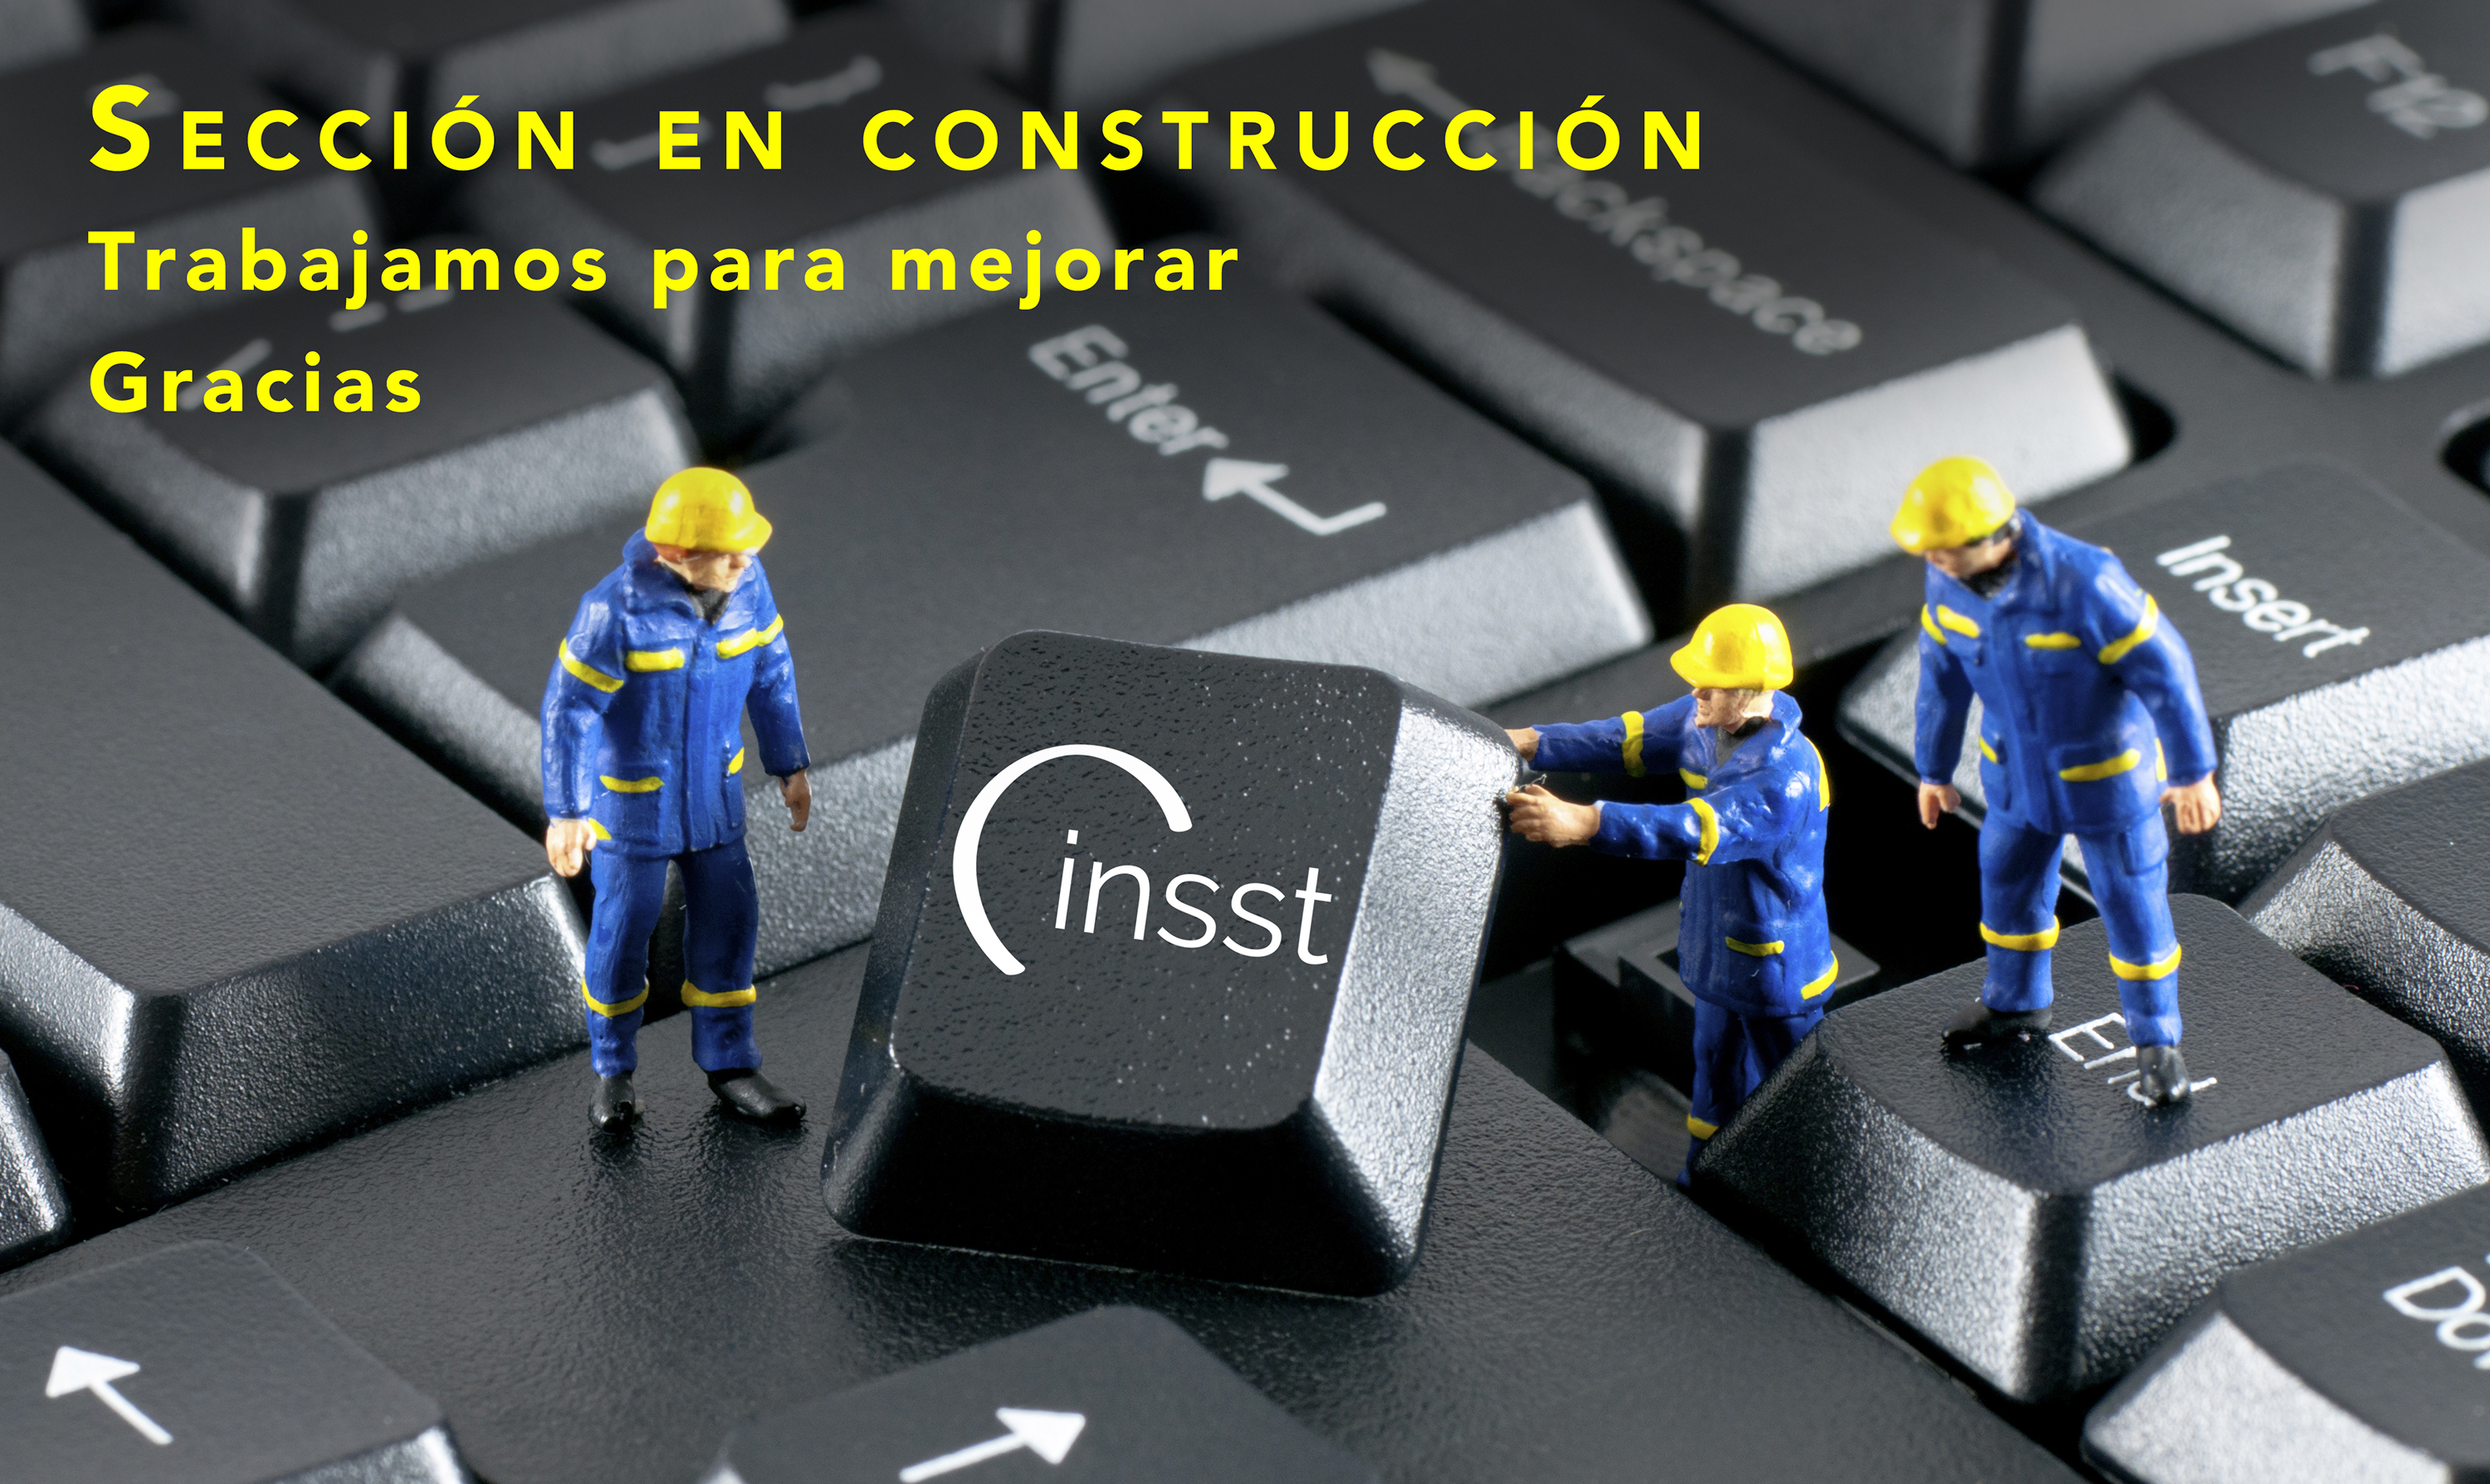 Imagen simbólica de página en construcción (obreros trabajando)